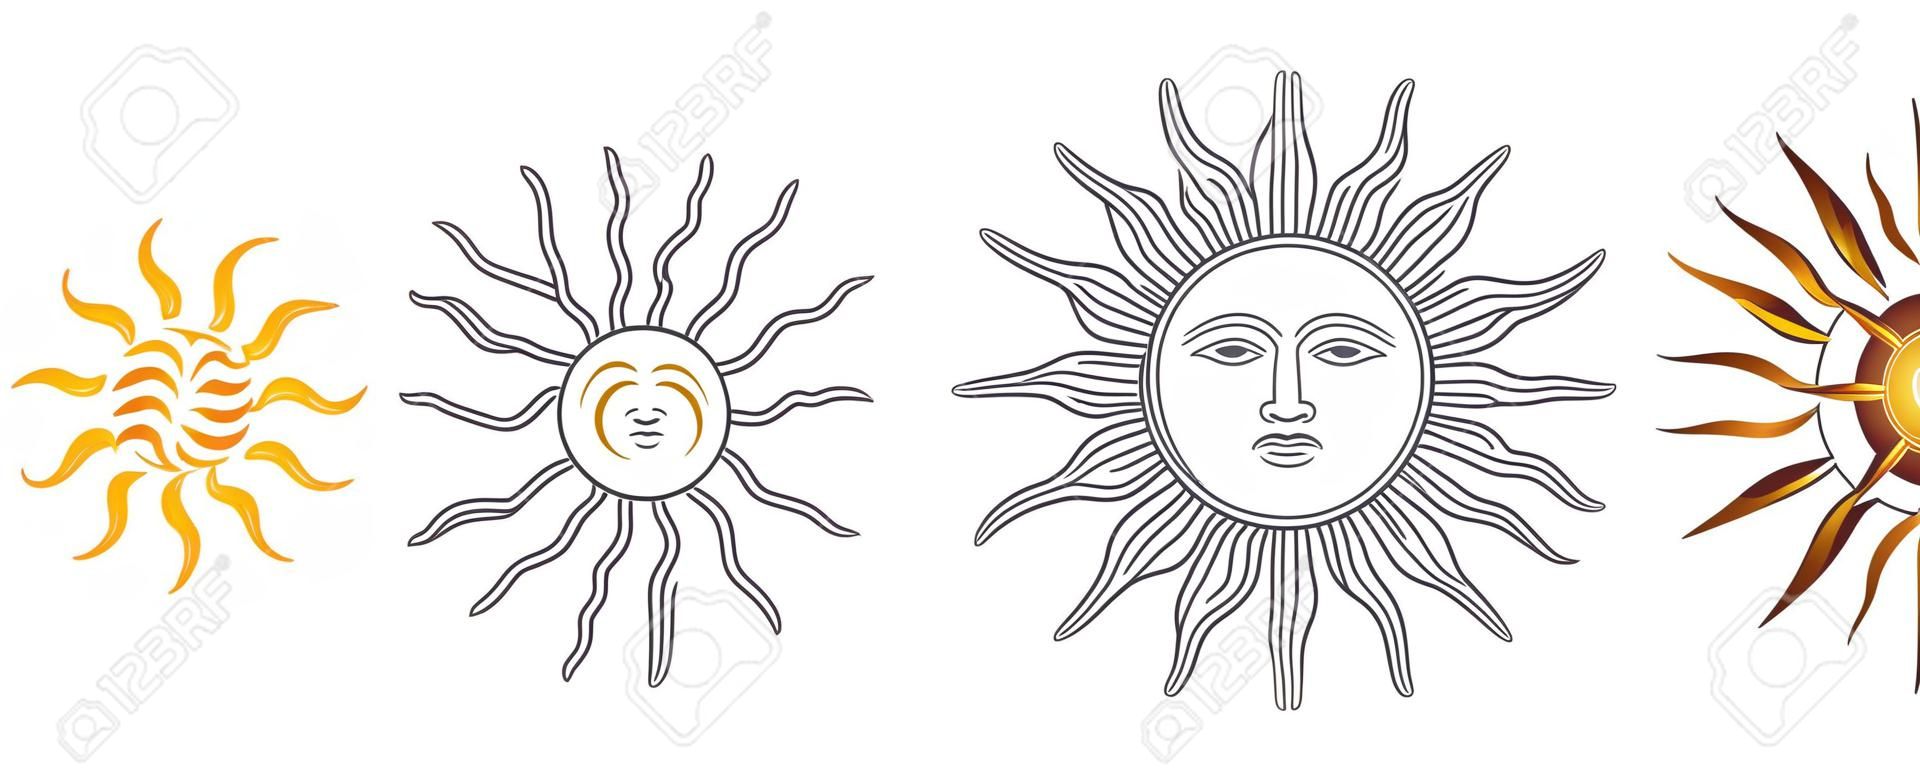 Variations du soleil de mai. Espagnol Sol de Mayo, emblèmes nationaux de l'Uruguay et de l'Argentine. Soleil radieux, argenté ou jaune doré à visage humain et rayons droits et ondulés. Illustration sur blanc. Vecteur.